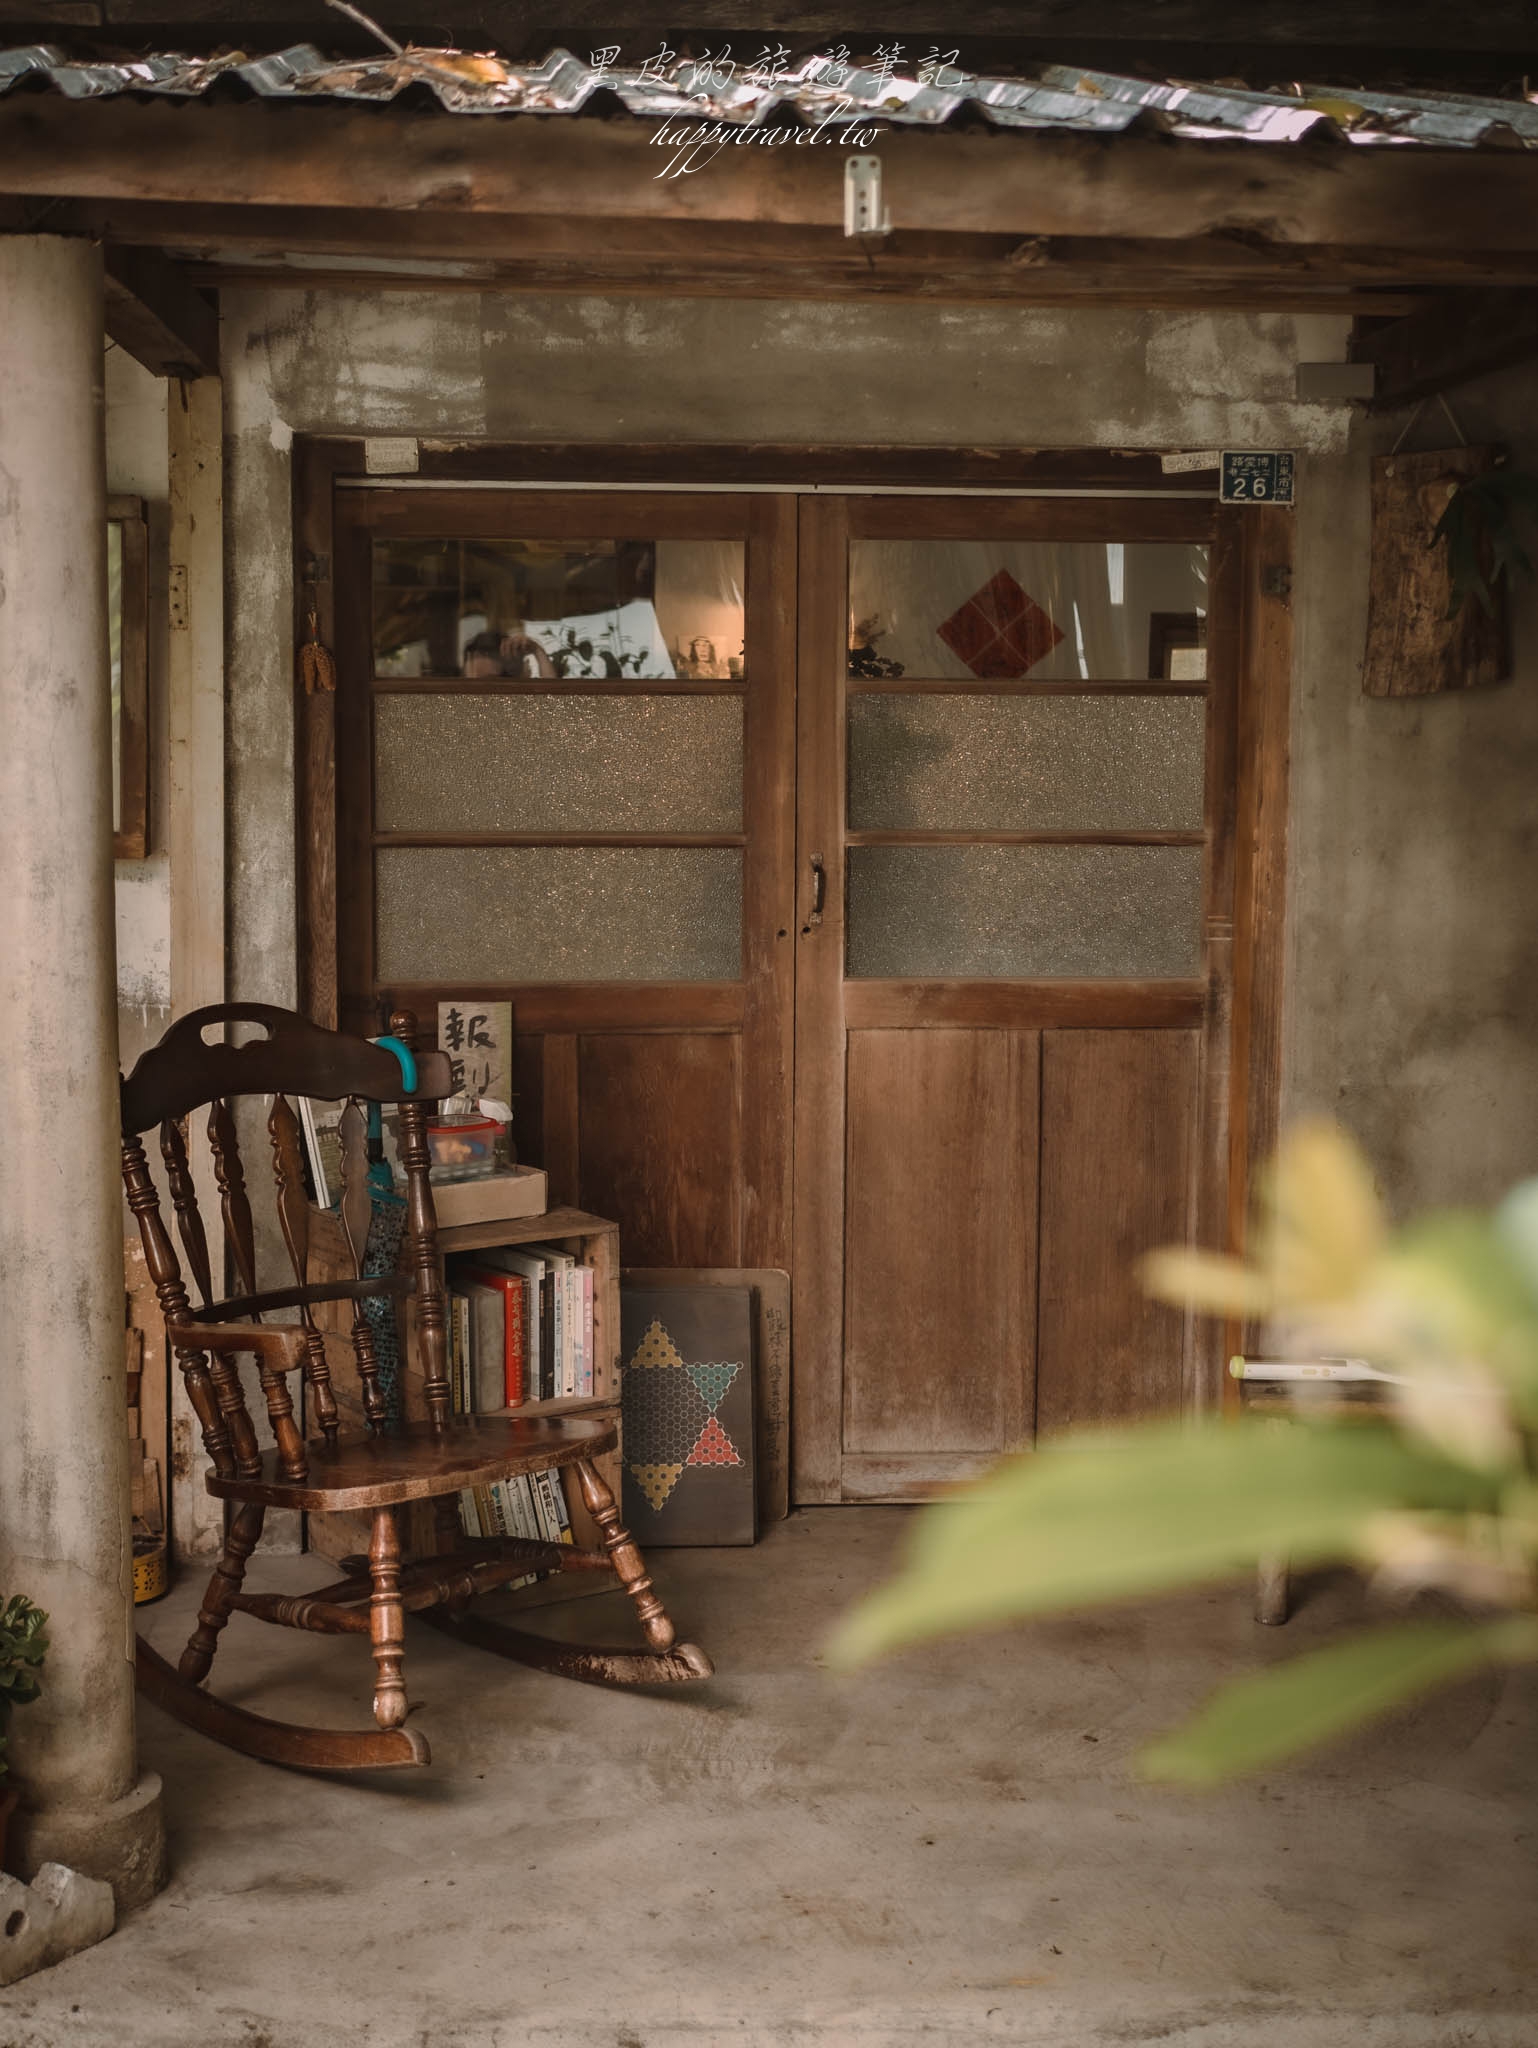 台東美食。橋chiao｜秘境般的叢林隱藏著一間老宅食堂，讓旅行途中享用到屬於“家”的幸福滋味，台東餐廳/台東咖啡廳